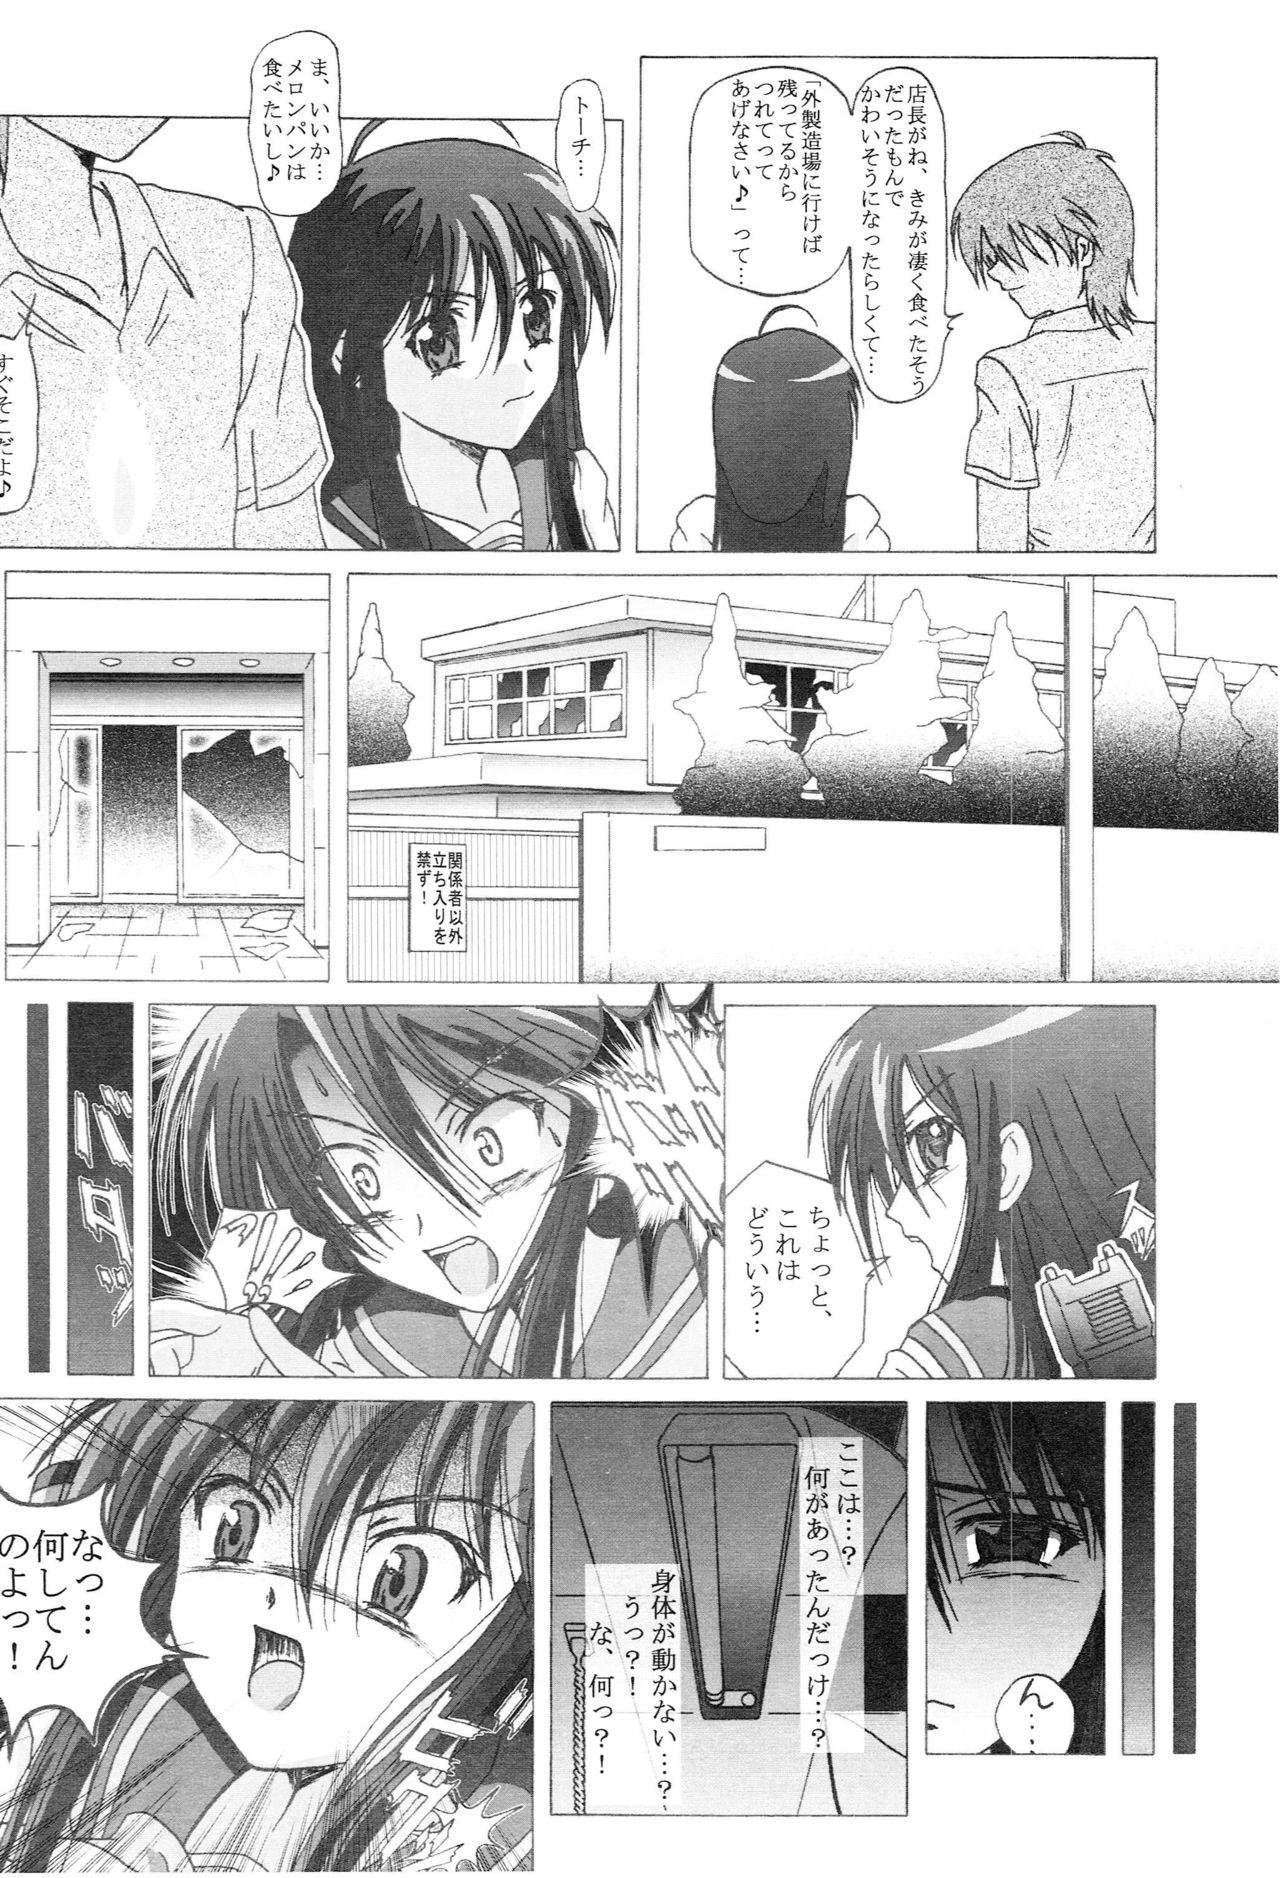 Cash Seinen Hana to Ribon 14 - Shakugan no shana Cam Girl - Page 5